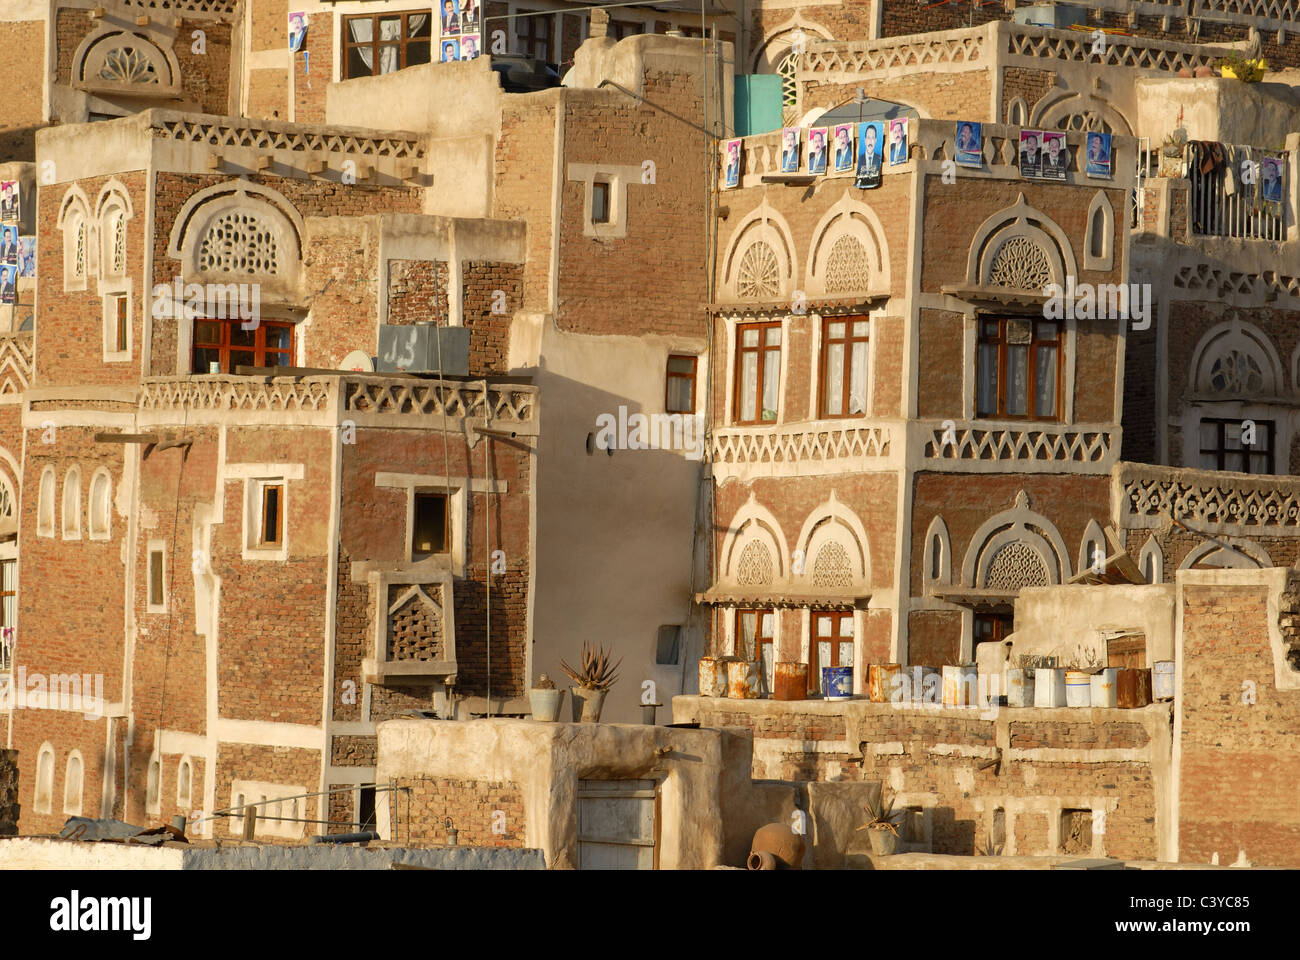 Altstadt von Sana'a, Arabien, città vecchia, in Arabia, Arabian, architettura, edilizia, famoso, tetto, tetti, facciata, facciate di edifici, Foto Stock